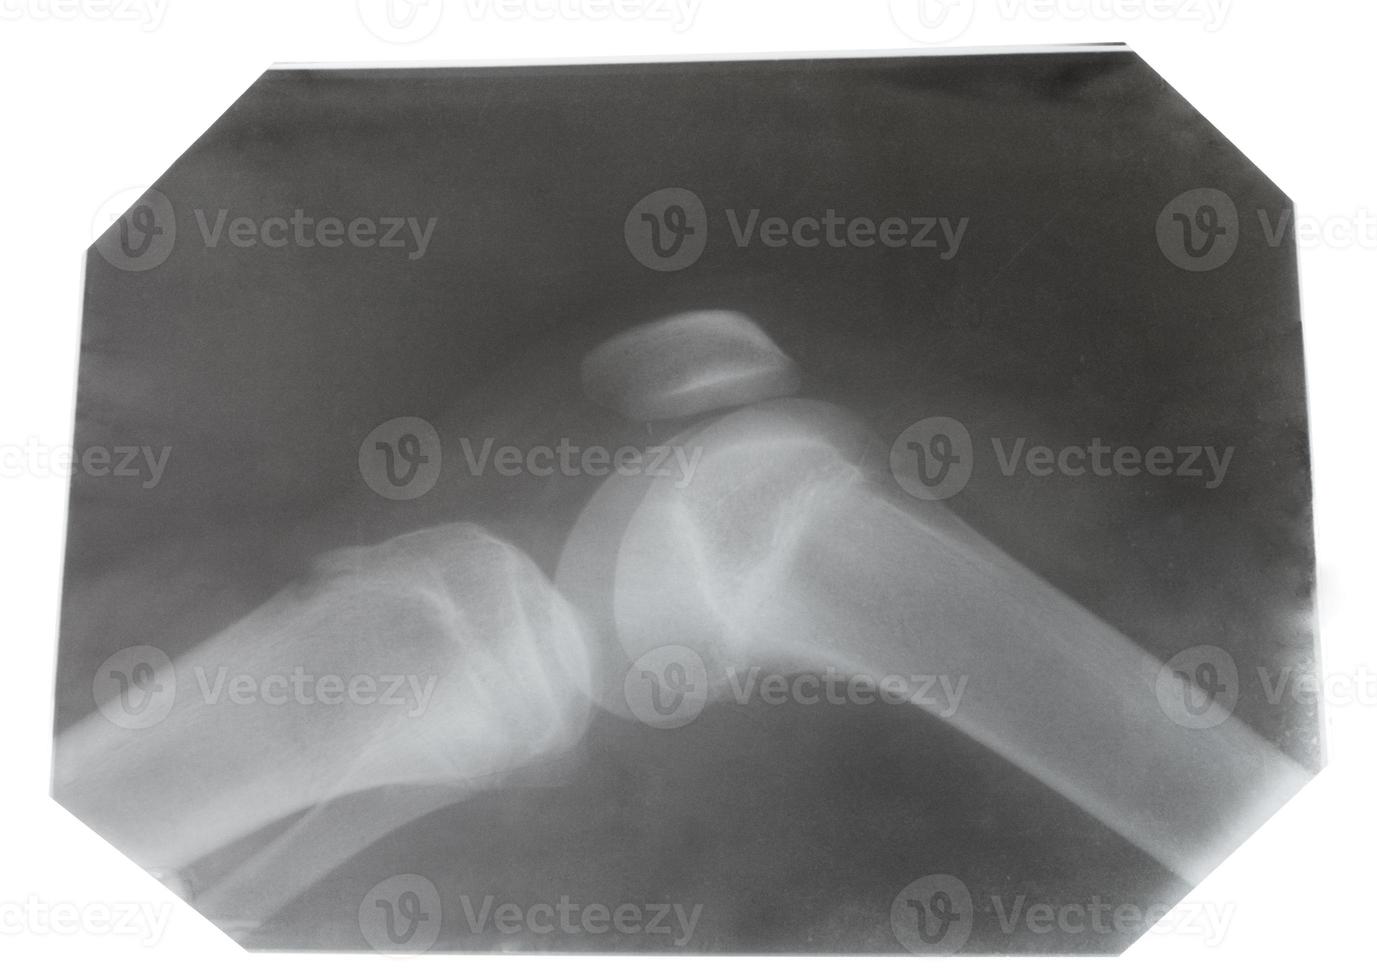 raggi X immagine di umano ginocchio comune foto